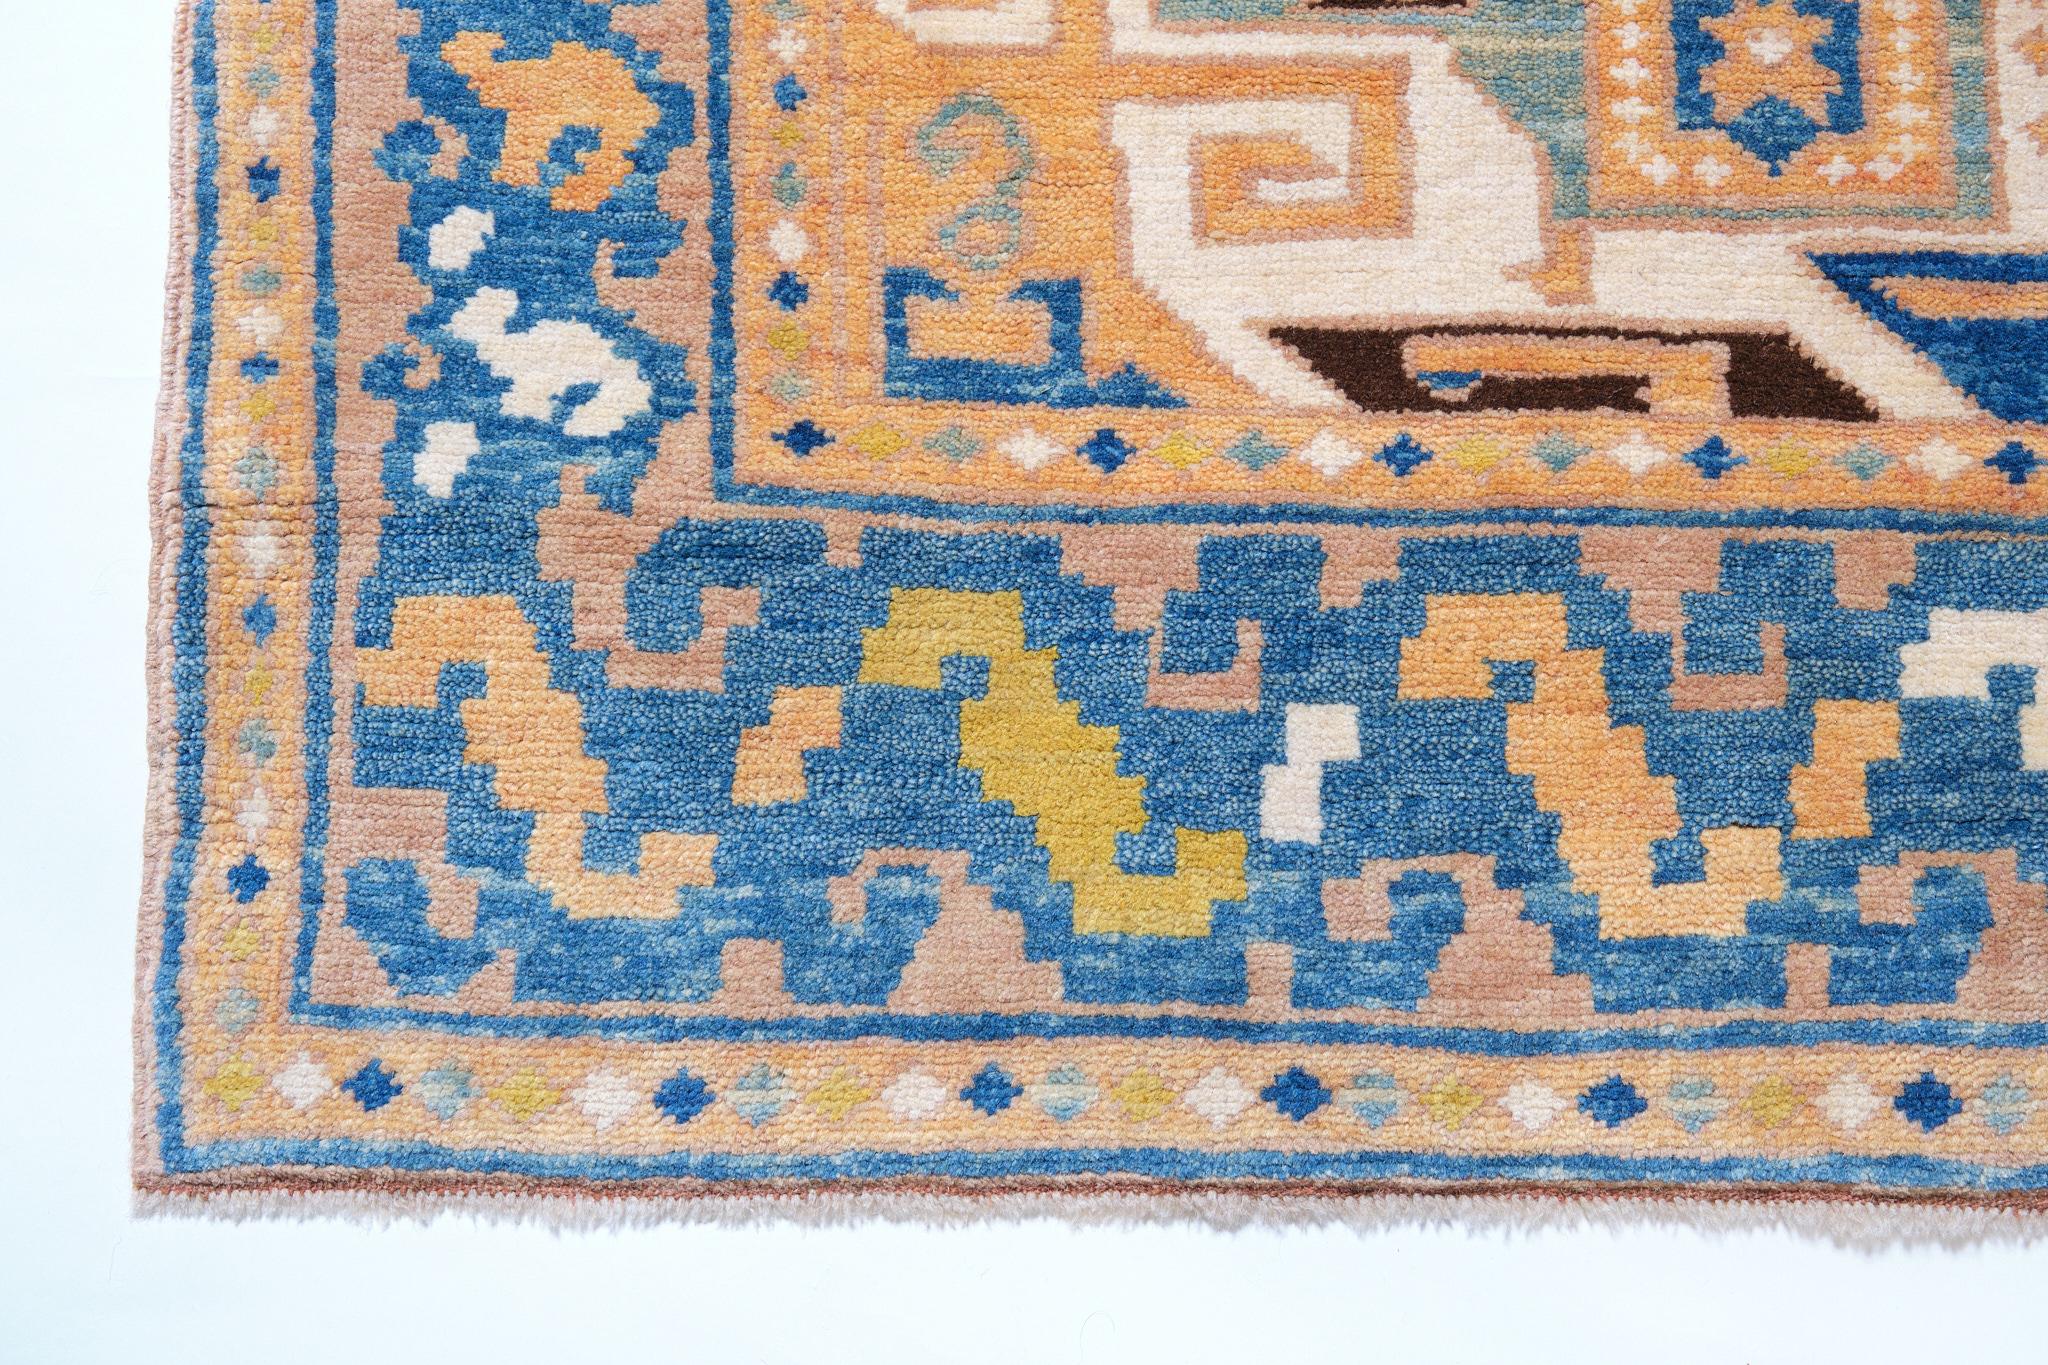 Die Quelle des Teppichs stammt aus dem Buch Orient Star - A Carpet Collection, E. Heinrich Kirchheim, Hali Publications Ltd, 1993 nr.2. Dies ist das bekannteste Beispiel eines Star Kazaks Teppichs aus der Mitte des 19. Star-Kazak-Teppiche gelten als